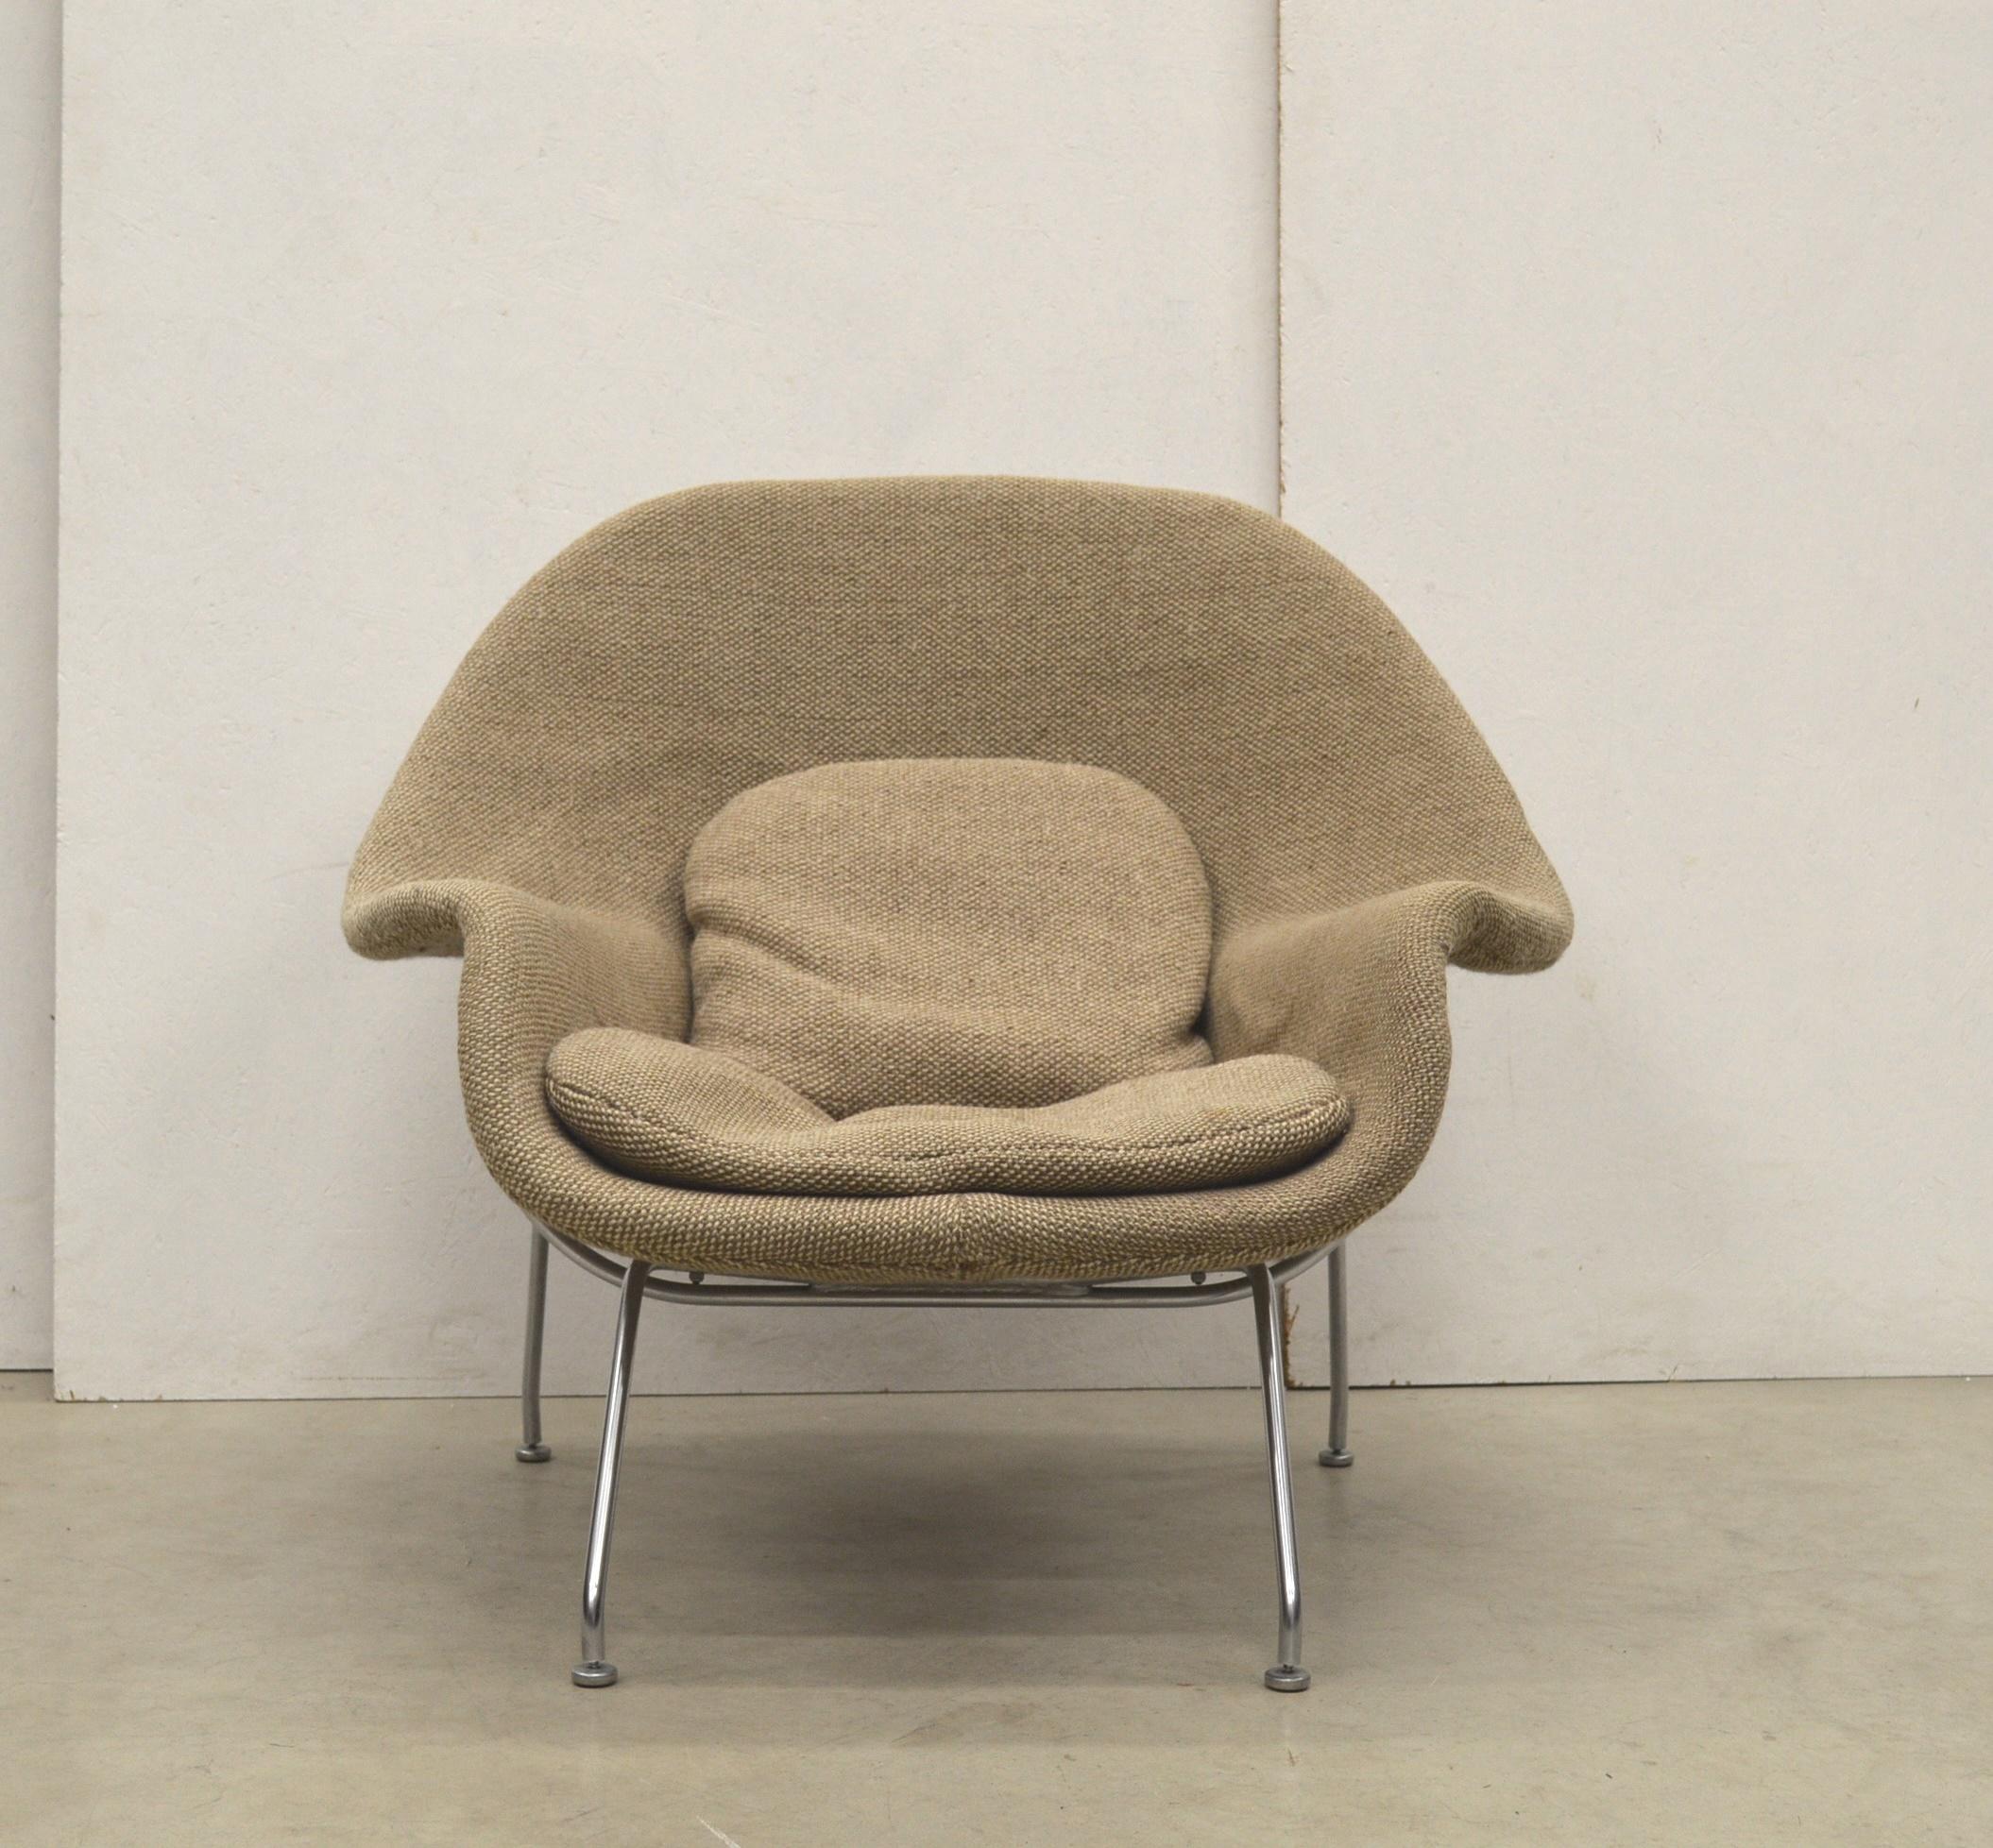 Chaise Womb en laine bicolore par Eero Saarinen pour Knoll. 

La révolutionnaire chaise Womb a été conçue en 1948 par Eero Saarinen à la demande de Florence Knoll qui souhaitait 